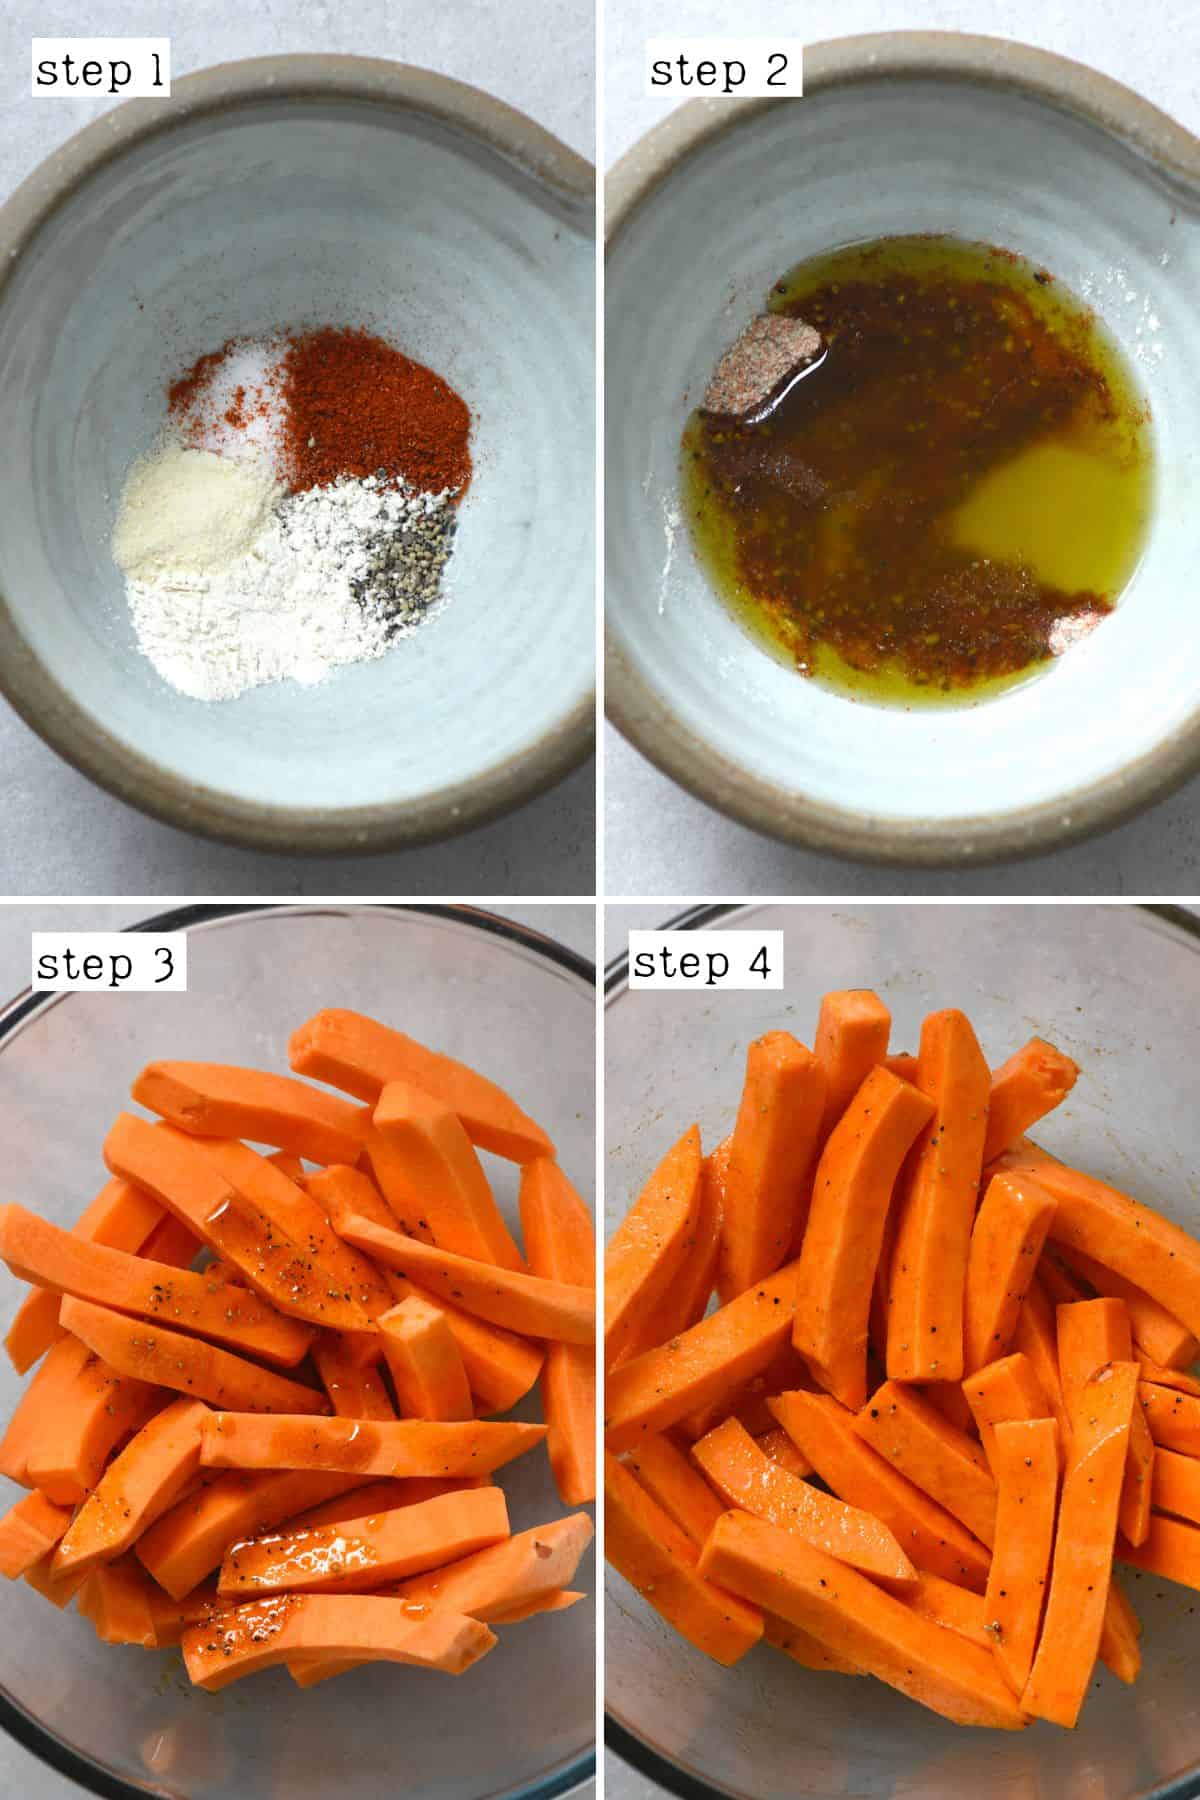 Steps for preparing sweet potato fries